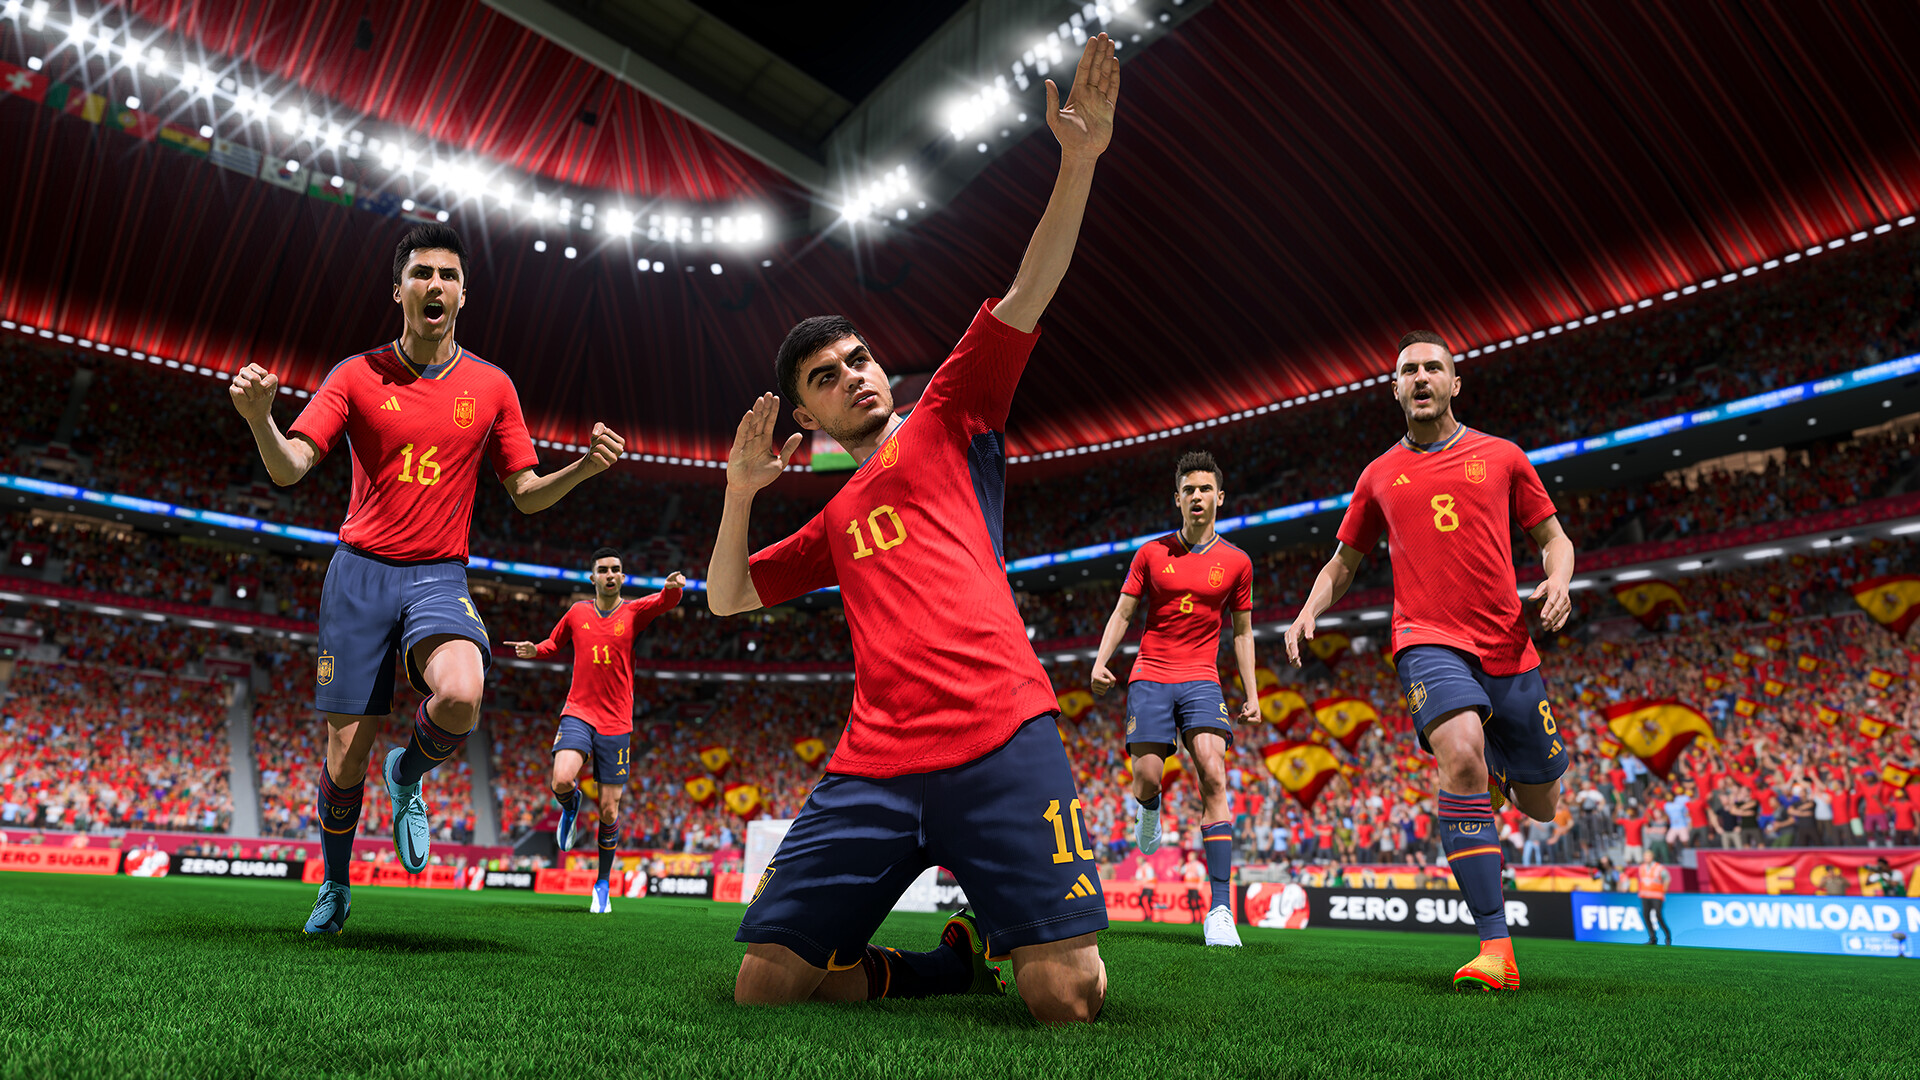 FIFA 23 está gratuito para jogar na Steam